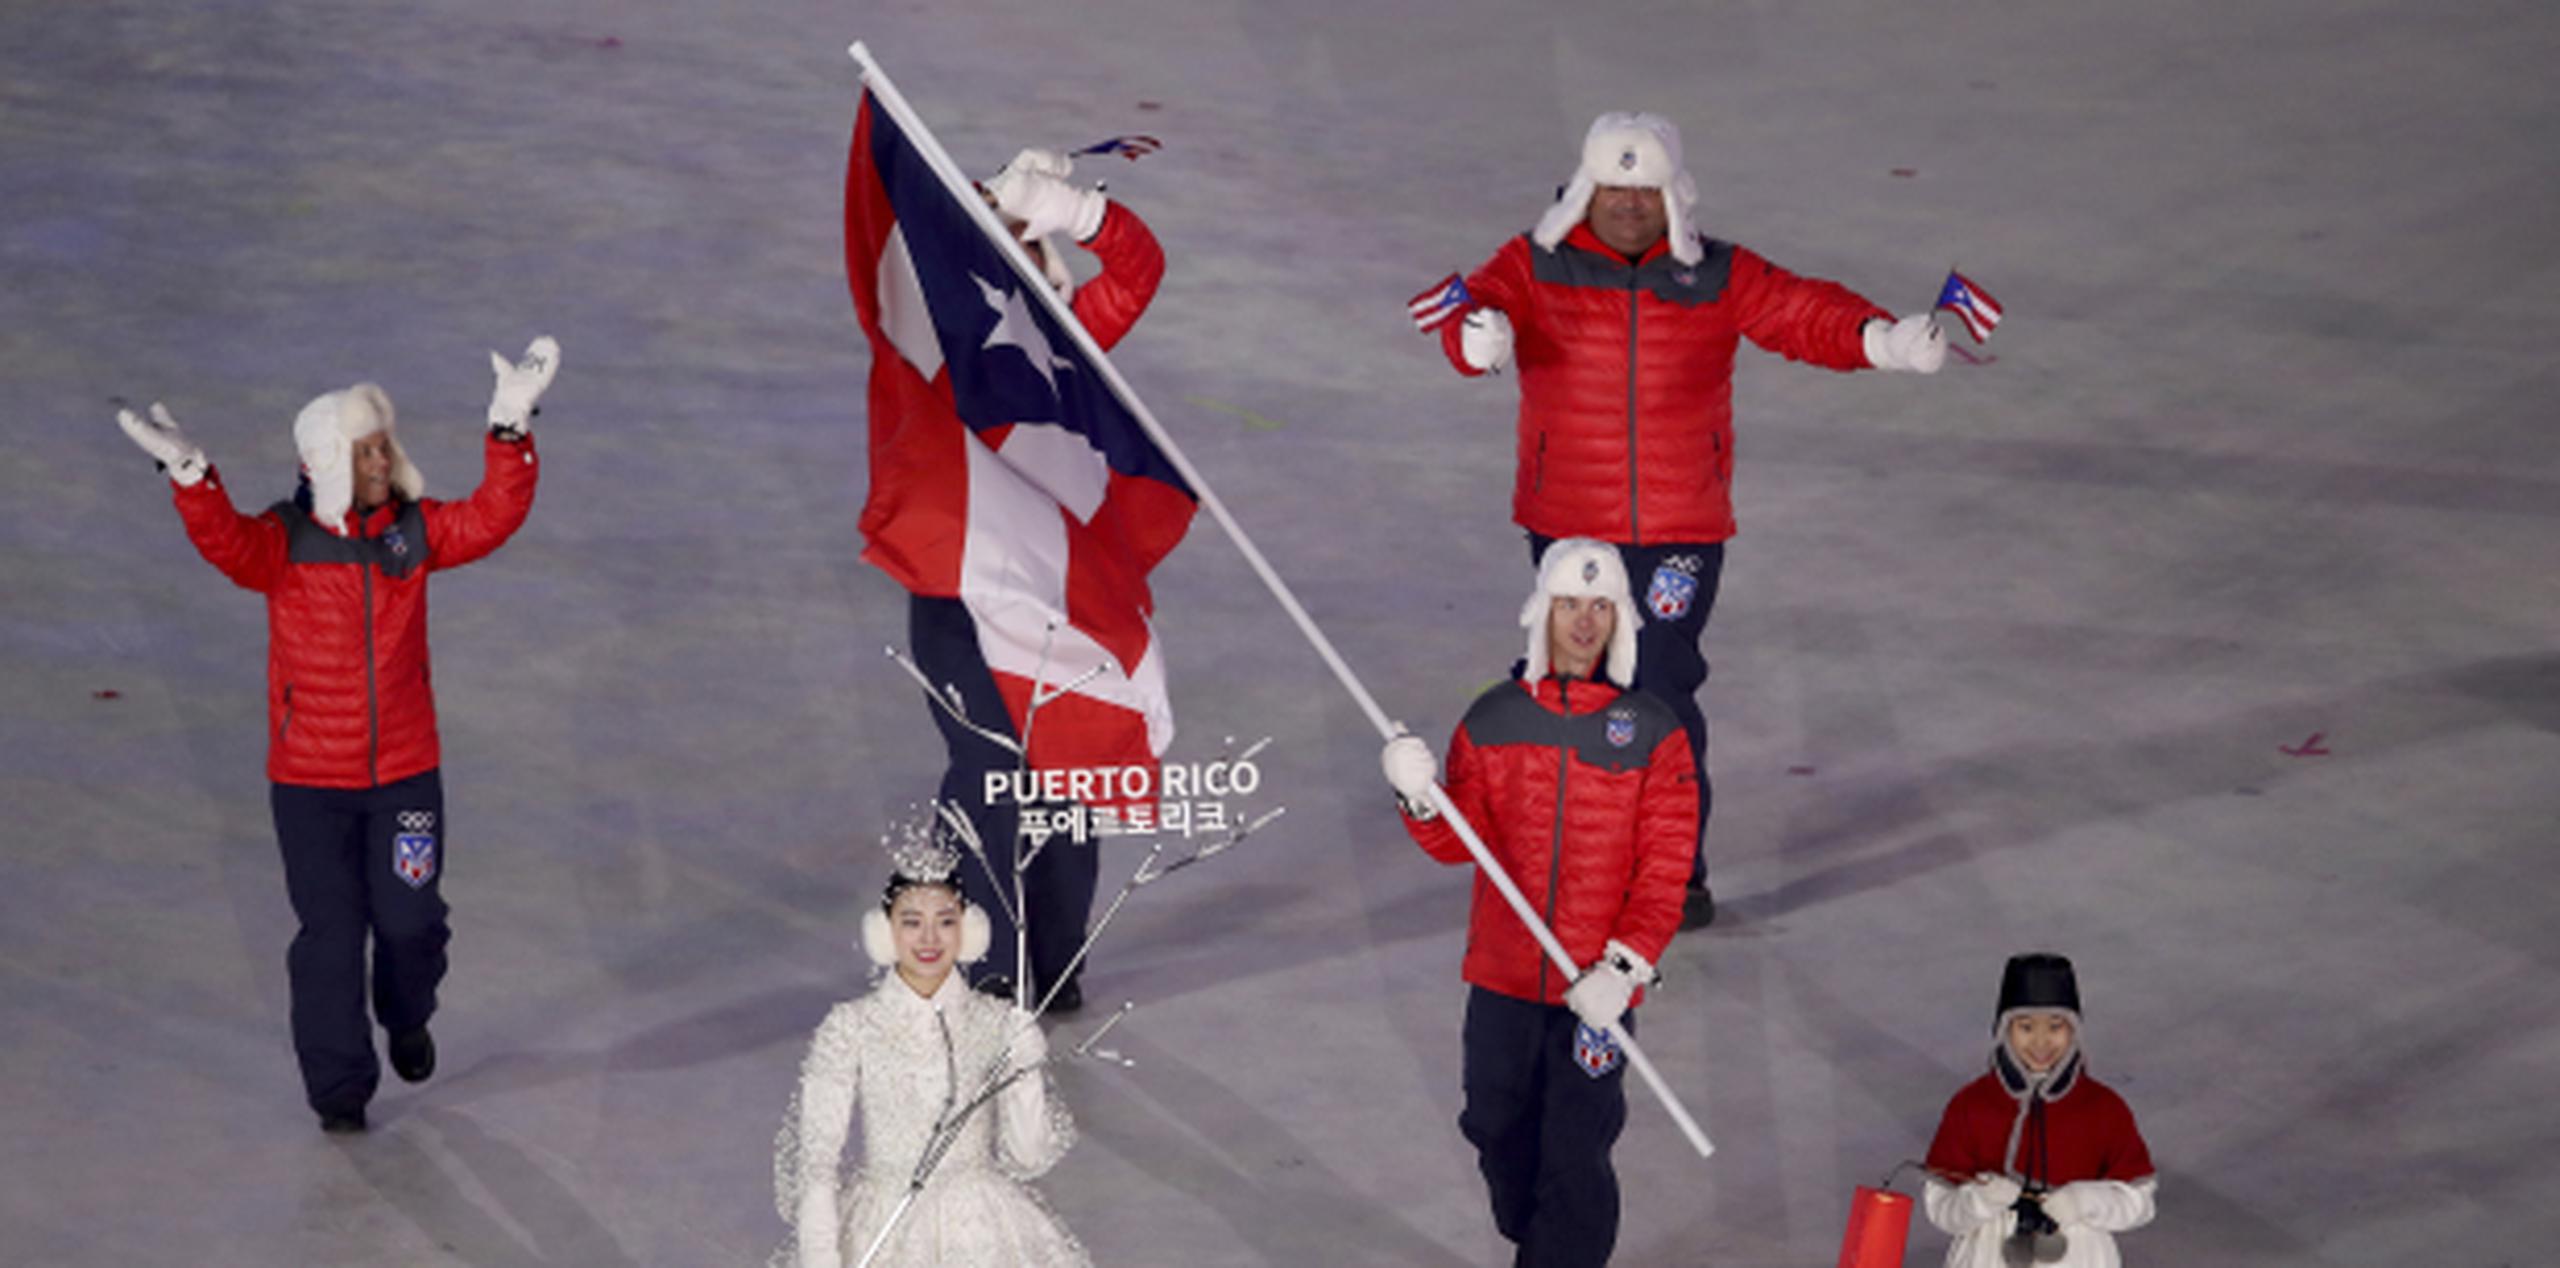 Flaherty porta la bandera de la isla en los XXIII Olimpiadas de Invierno 2018 que arrancan hoy en Pyeongchang, Corea del Sur. (Archivo)